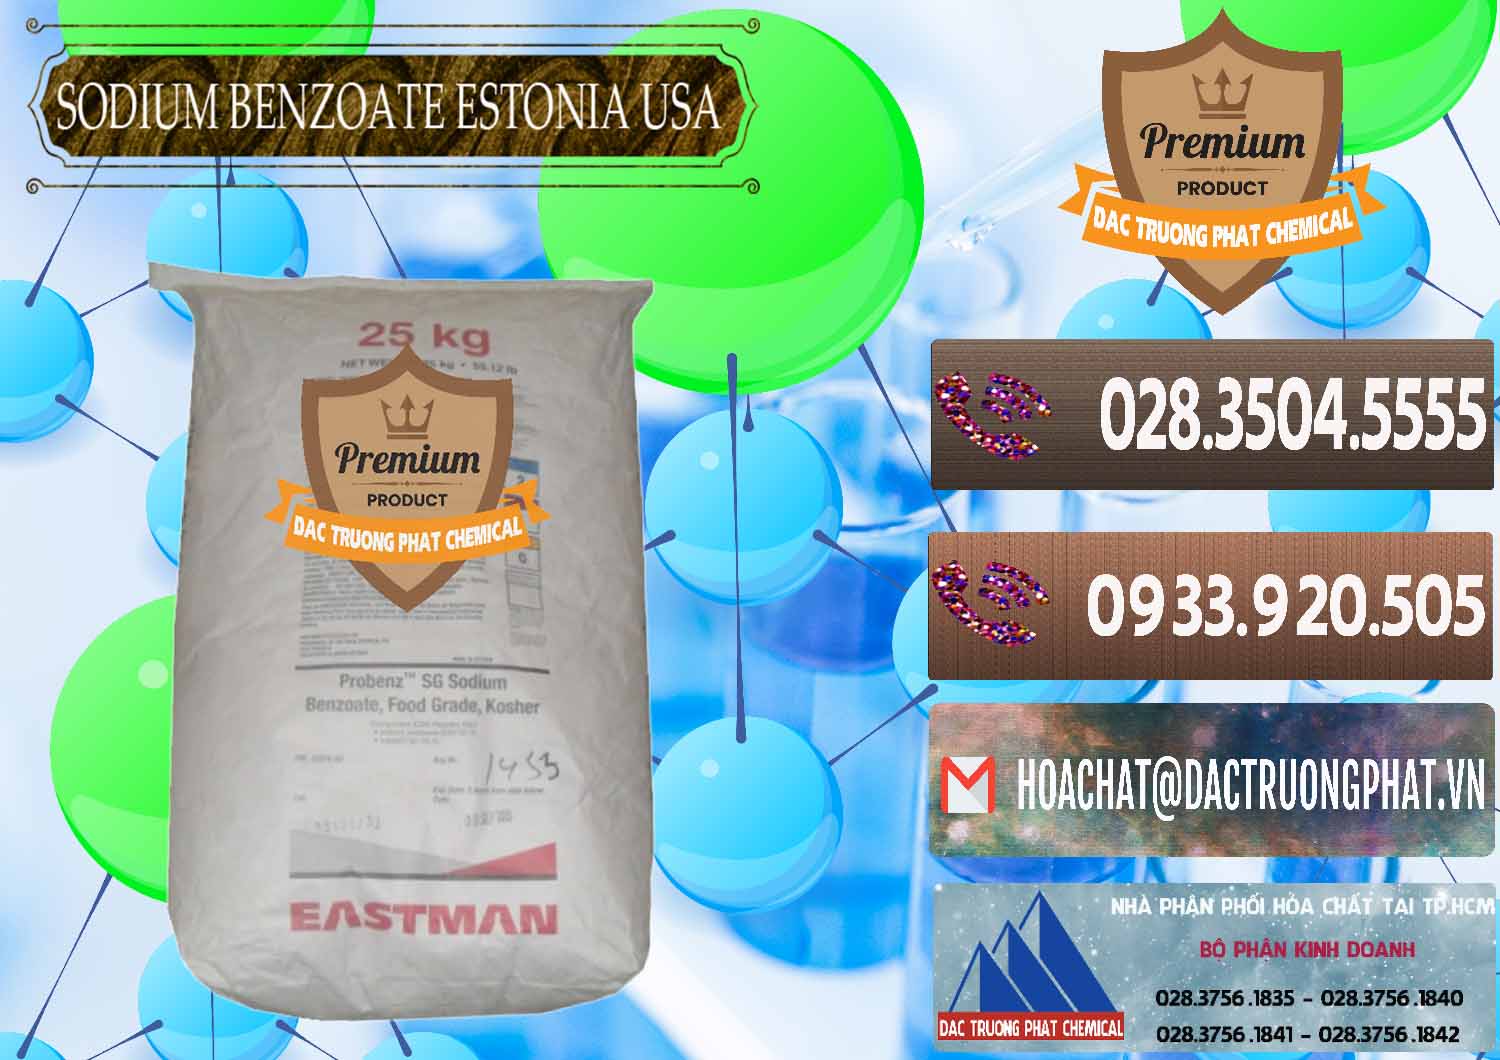 Cty cung cấp và bán Sodium Benzoate - Mốc Bột Estonia Mỹ USA - 0468 - Công ty chuyên phân phối - cung ứng hóa chất tại TP.HCM - hoachatviet.net